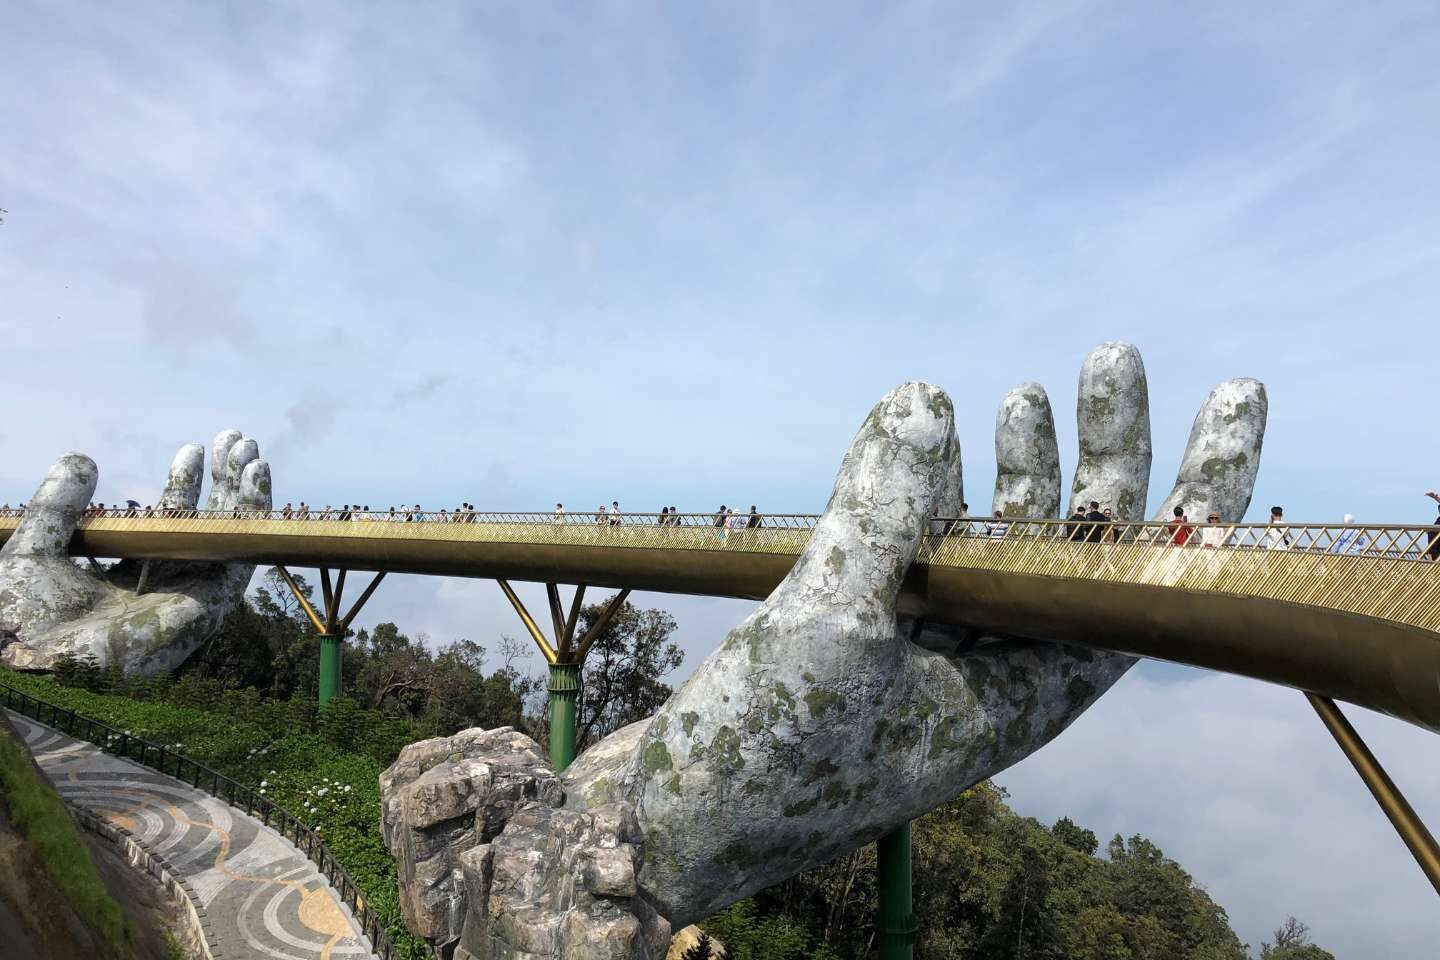 Unique structure of Golden Hands Bridge in Vietnam